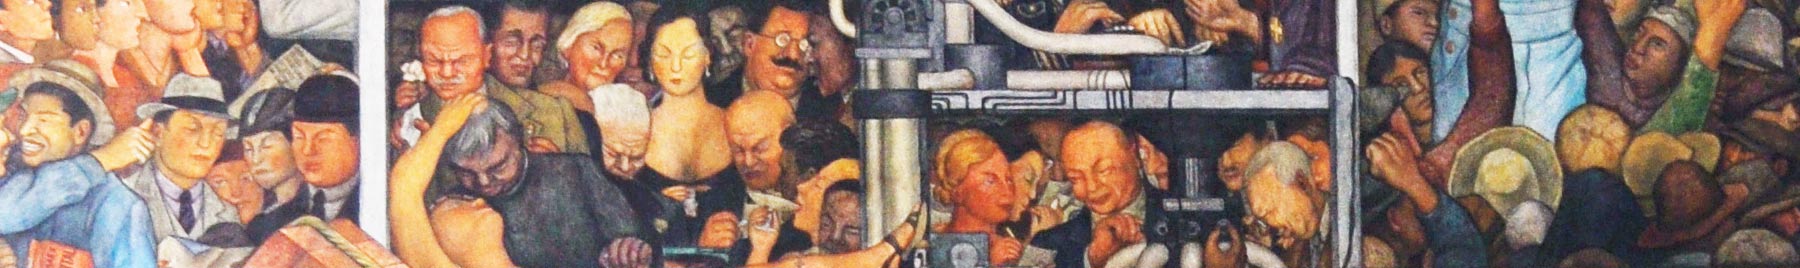 Parte izquierda del mural de Diego Rivera Epopeya del pueblo mexicano, en el Palacio nacional de México. 